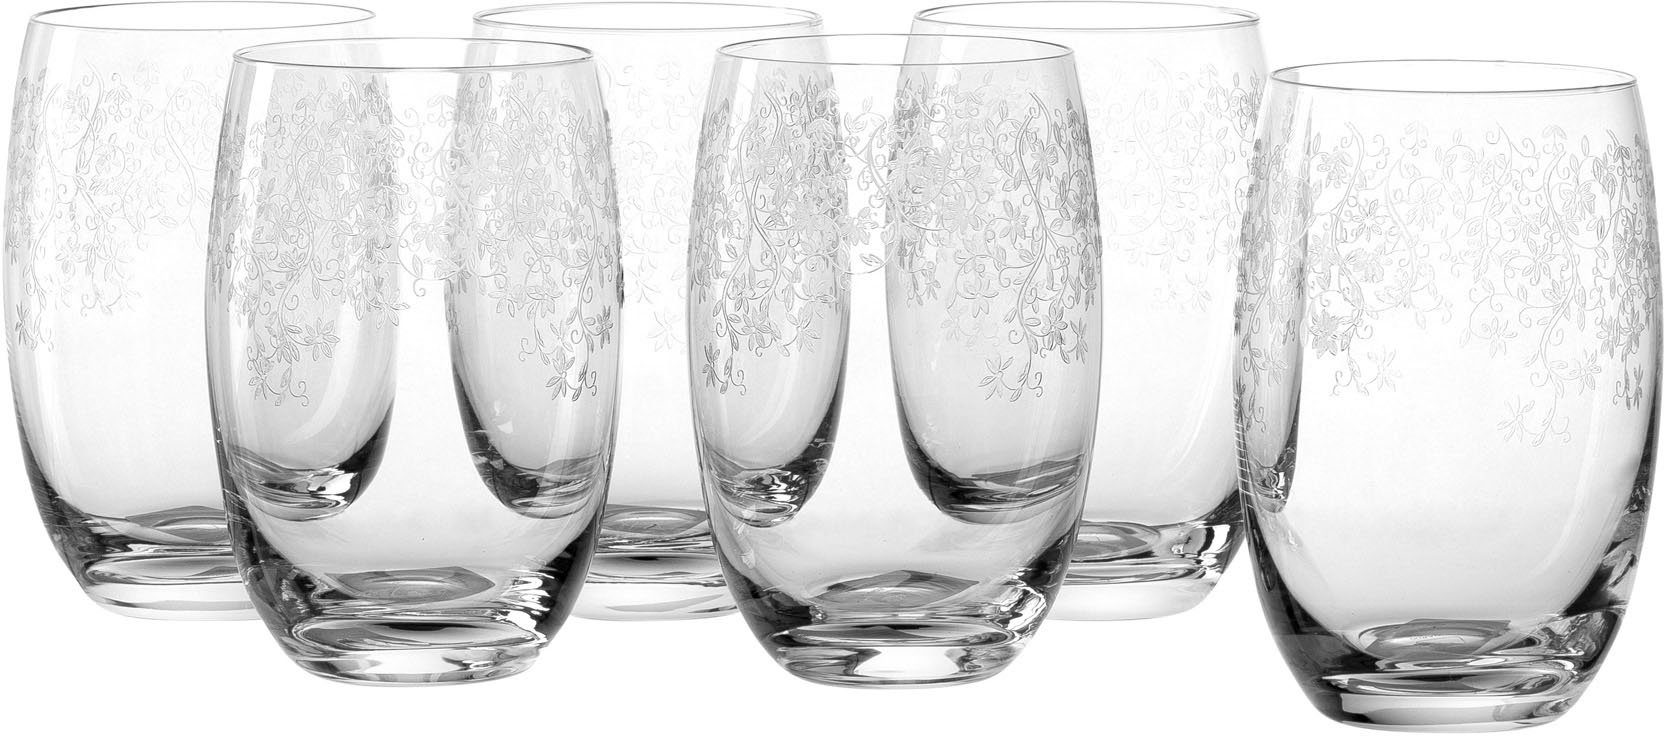 LEONARDO Gläser-Set CHATEAU, Kristallglas, 460 ml, 6-teilig